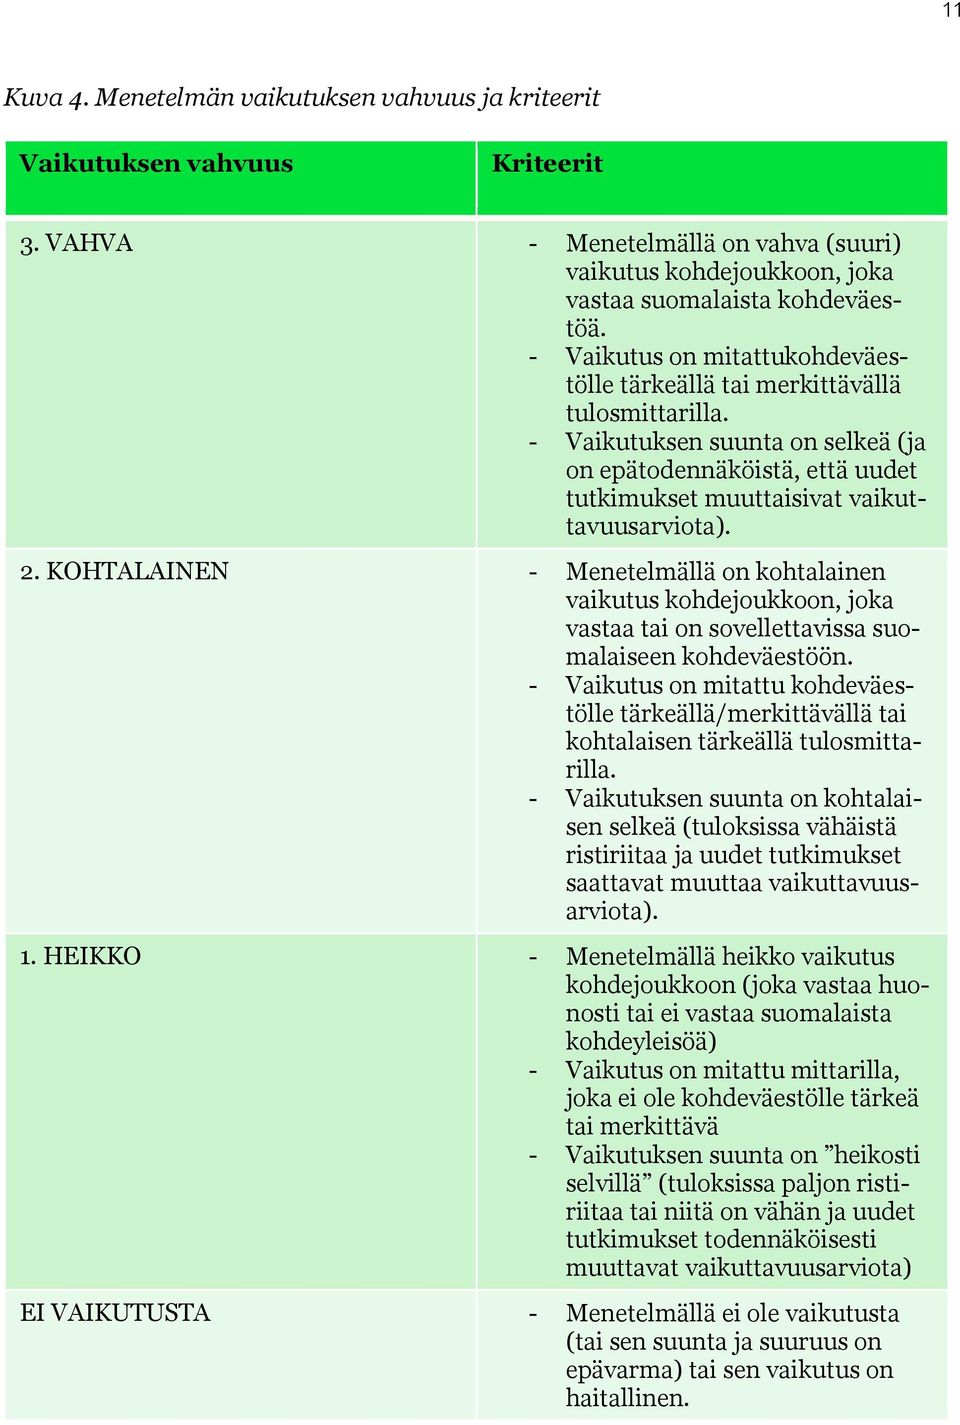 KOHTALAINEN - Menetelmällä on kohtalainen vaikutus kohdejoukkoon, joka vastaa tai on sovellettavissa suomalaiseen kohdeväestöön.